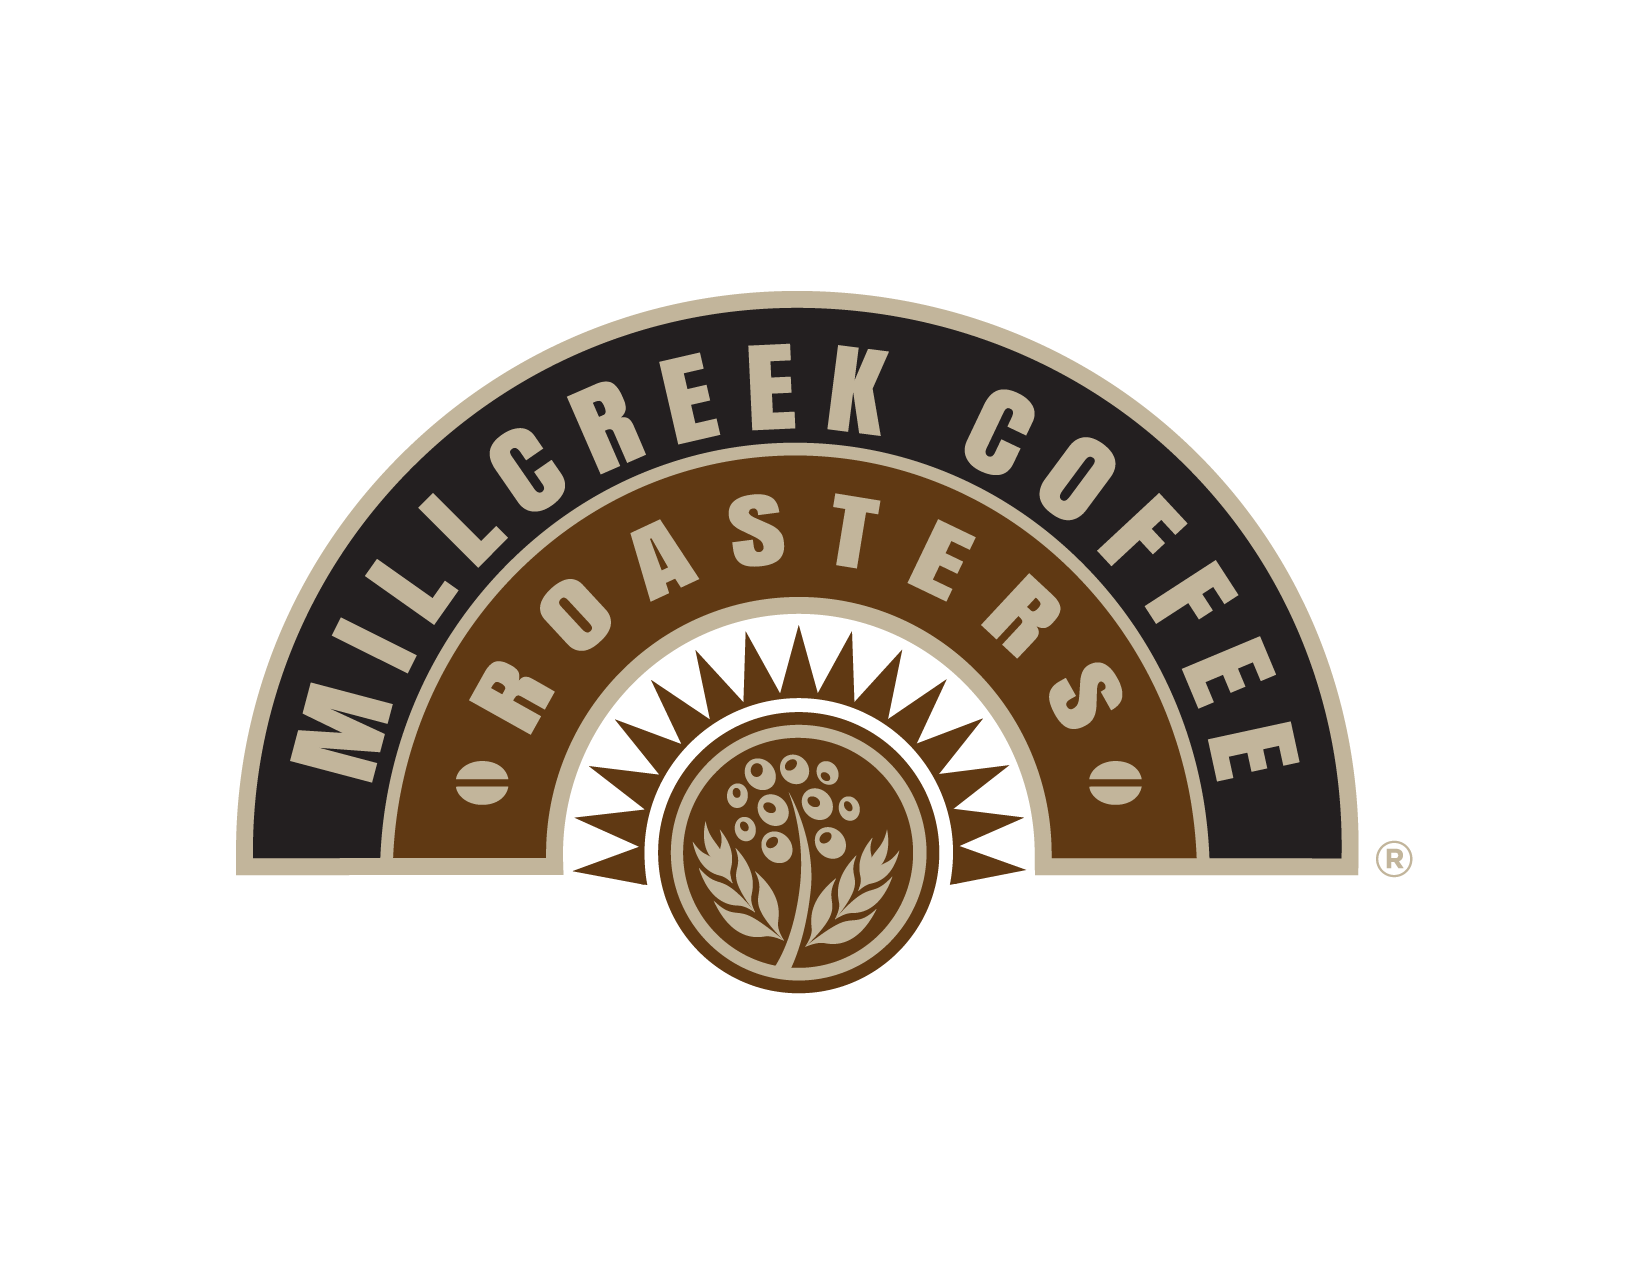 Millcreek Coffee Roasters Airport 